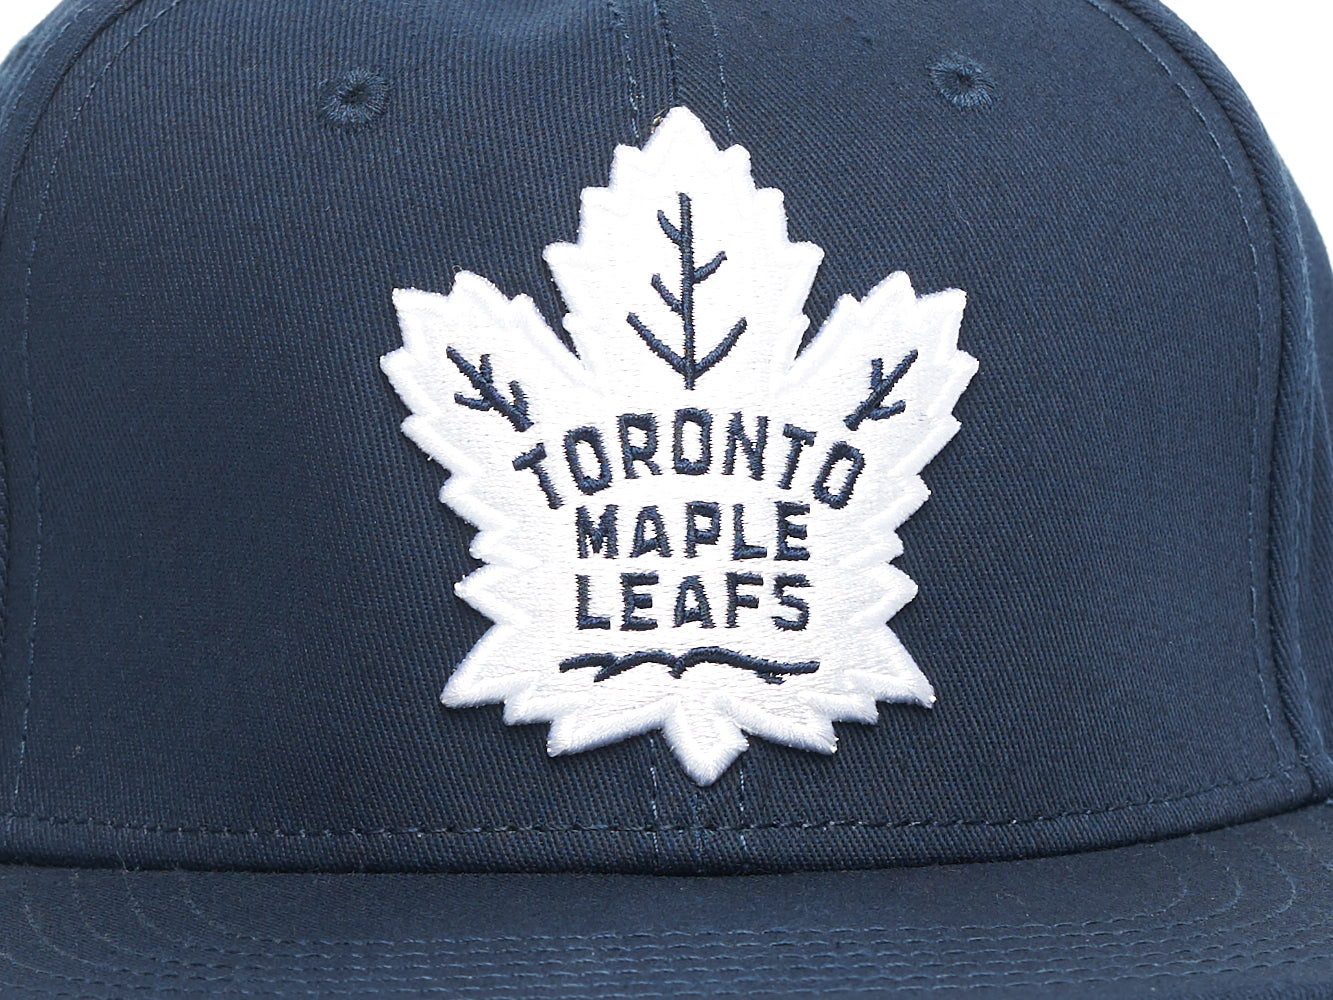  Atributika & club NHL Toronto Maple Leafs 31083 SR